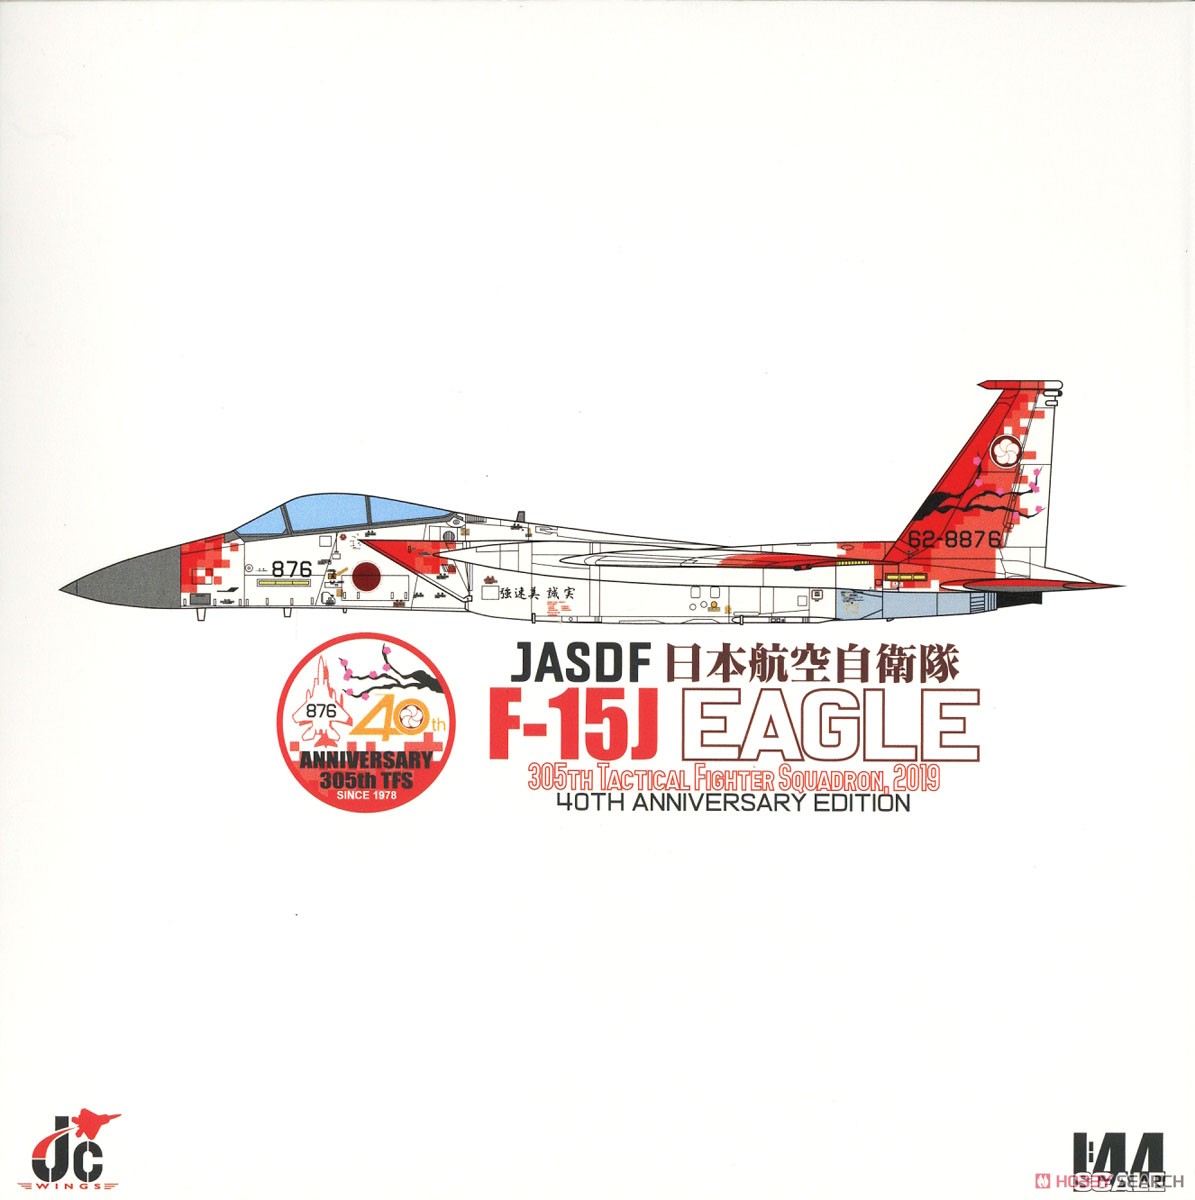 F-15J 航空自衛隊 第305飛行隊 創設40周年記念塗装機 2019 (完成品飛行機) パッケージ1